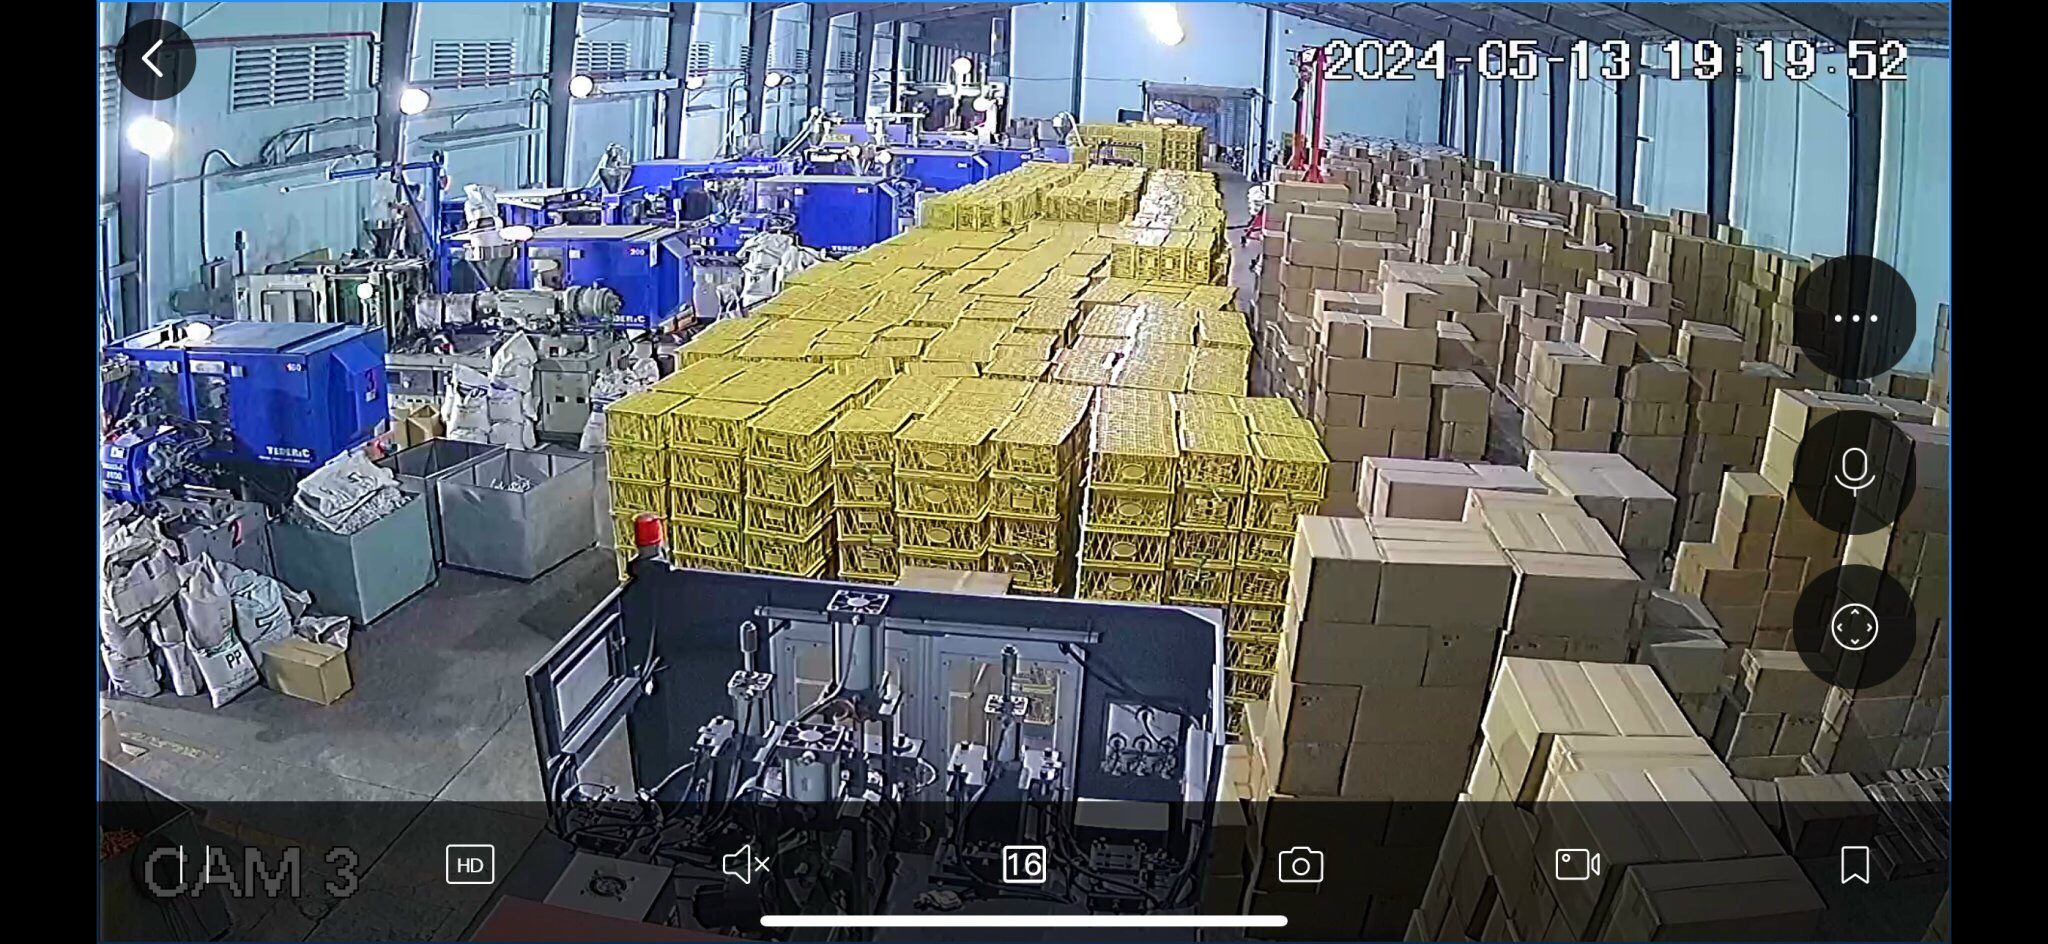 Cty Nhựa Kim Nguyên tuyển LĐPT Nam đứng máy ép nhựa ở Bình Tân